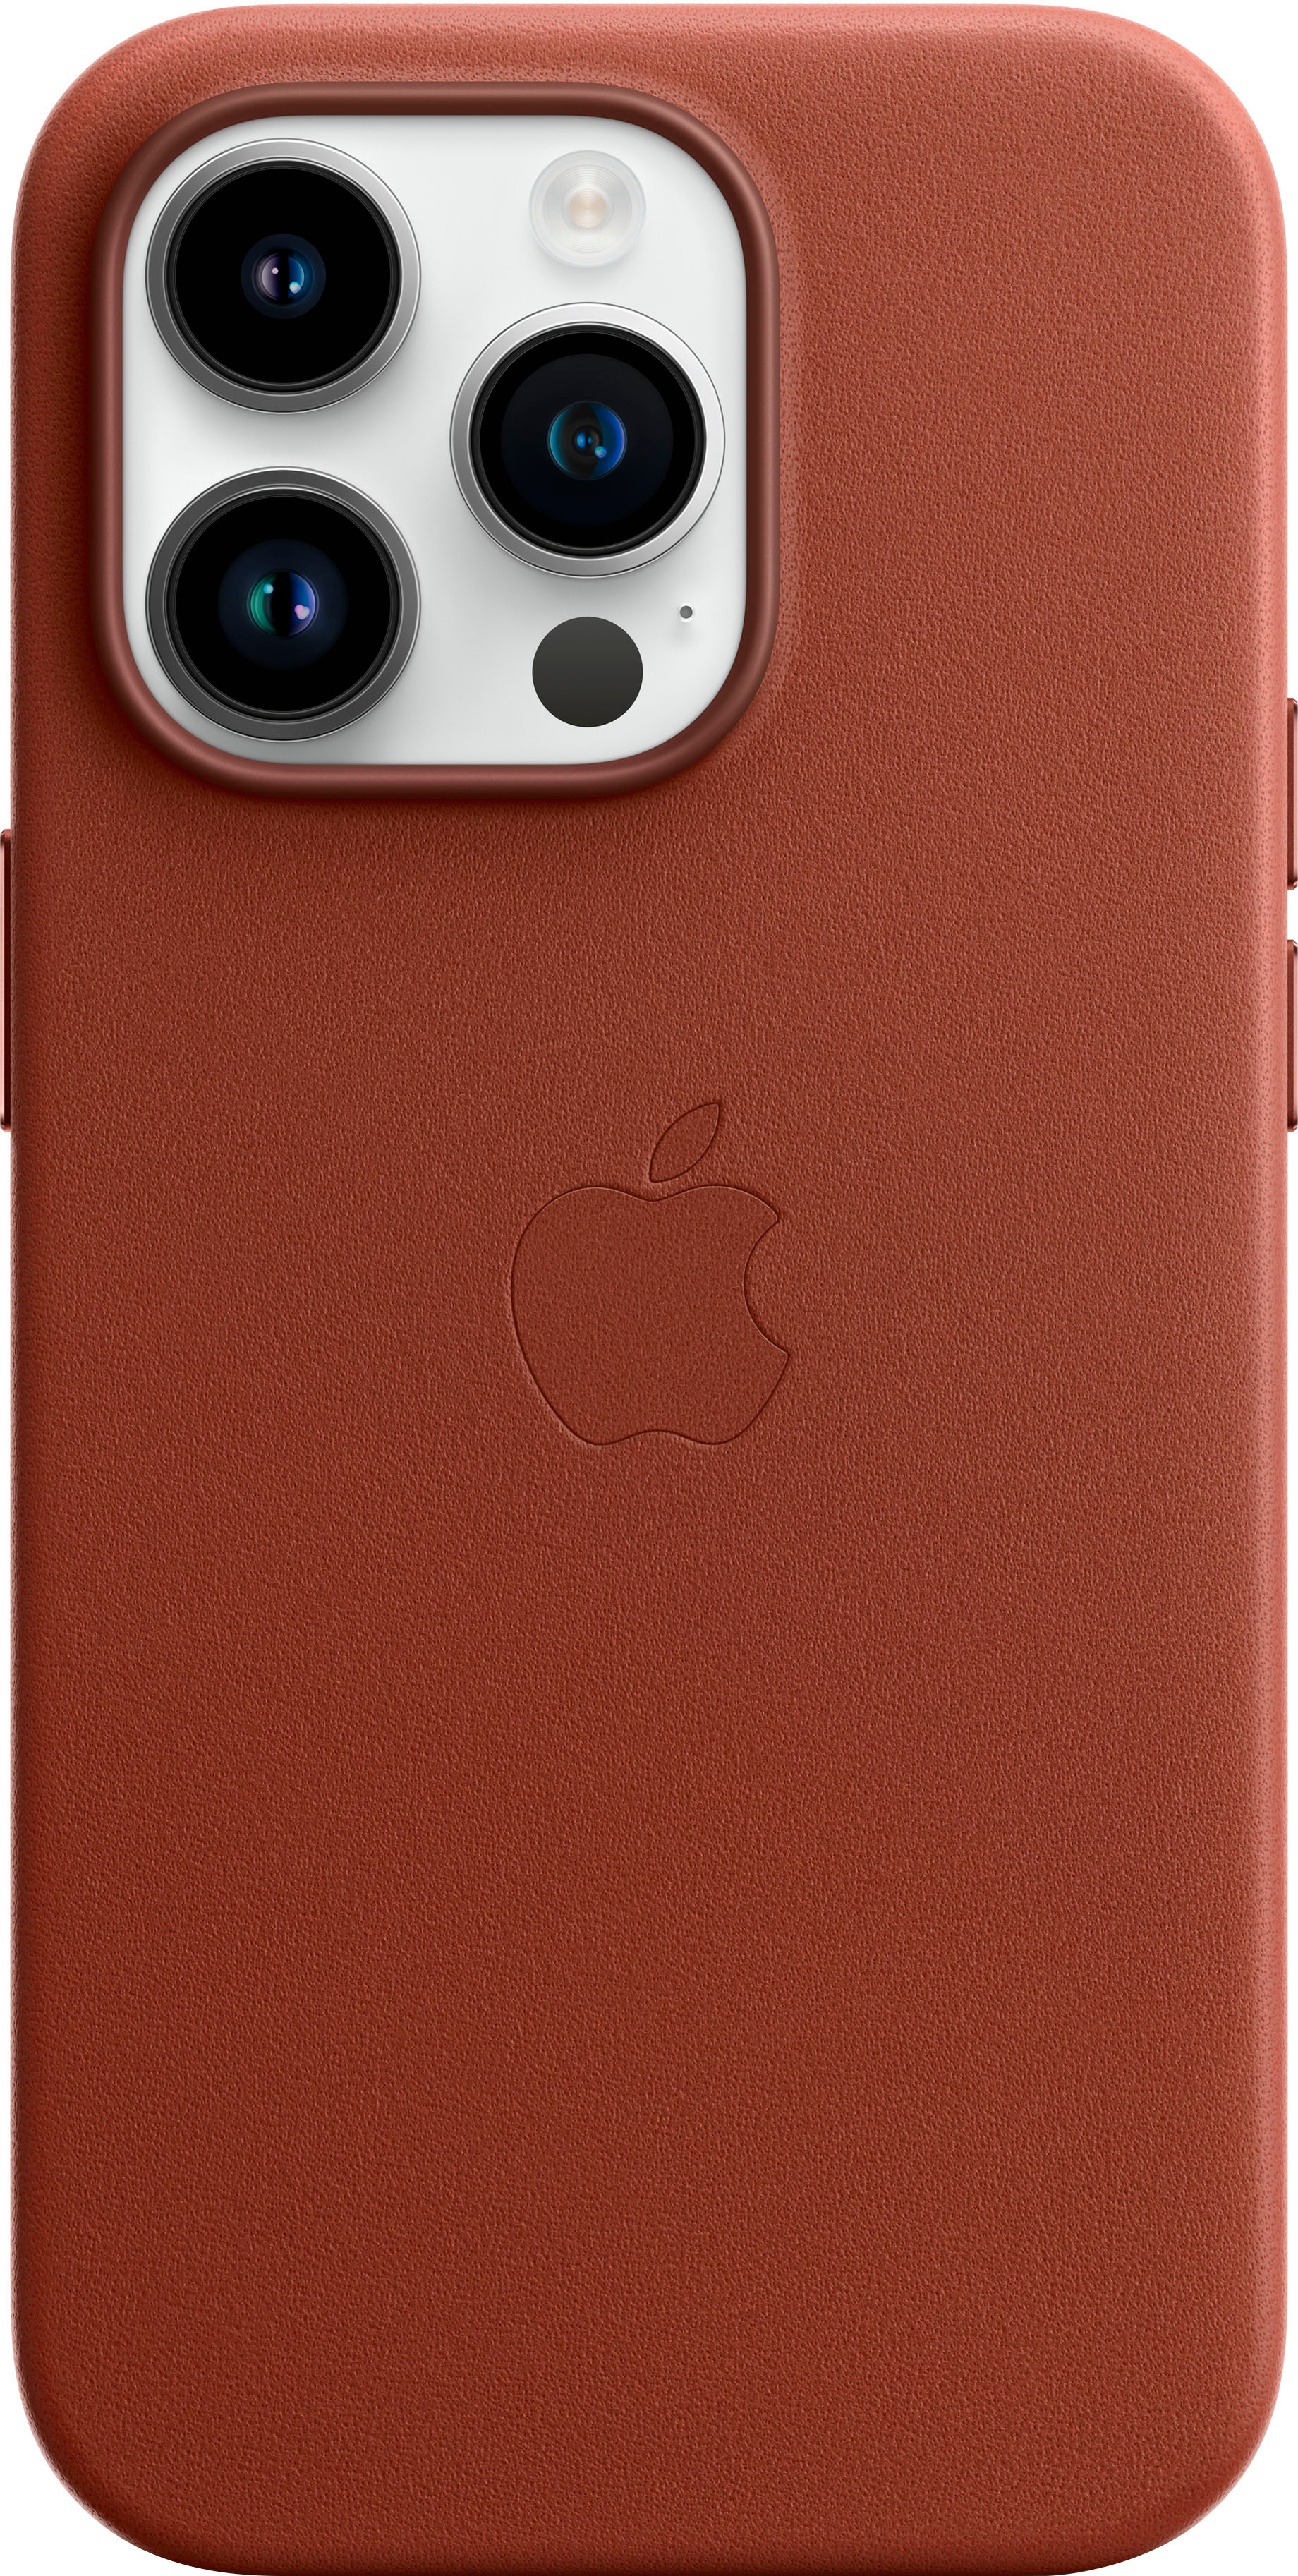 Với iPhone 14 Pro Leather Case, bạn sẽ không chỉ được sở hữu phong cách sang trọng mà còn được bảo vệ trọn vẹn chiếc smartphone của mình. Chất liệu da tổng hợp cao cấp vừa mềm mại vừa bền đẹp là một trong những điểm làm nên sự kết hợp hoàn hảo giữa thiết kế và chức năng. Click ngay vào hình ảnh để khám phá thêm những chi tiết tuyệt vời của sản phẩm.